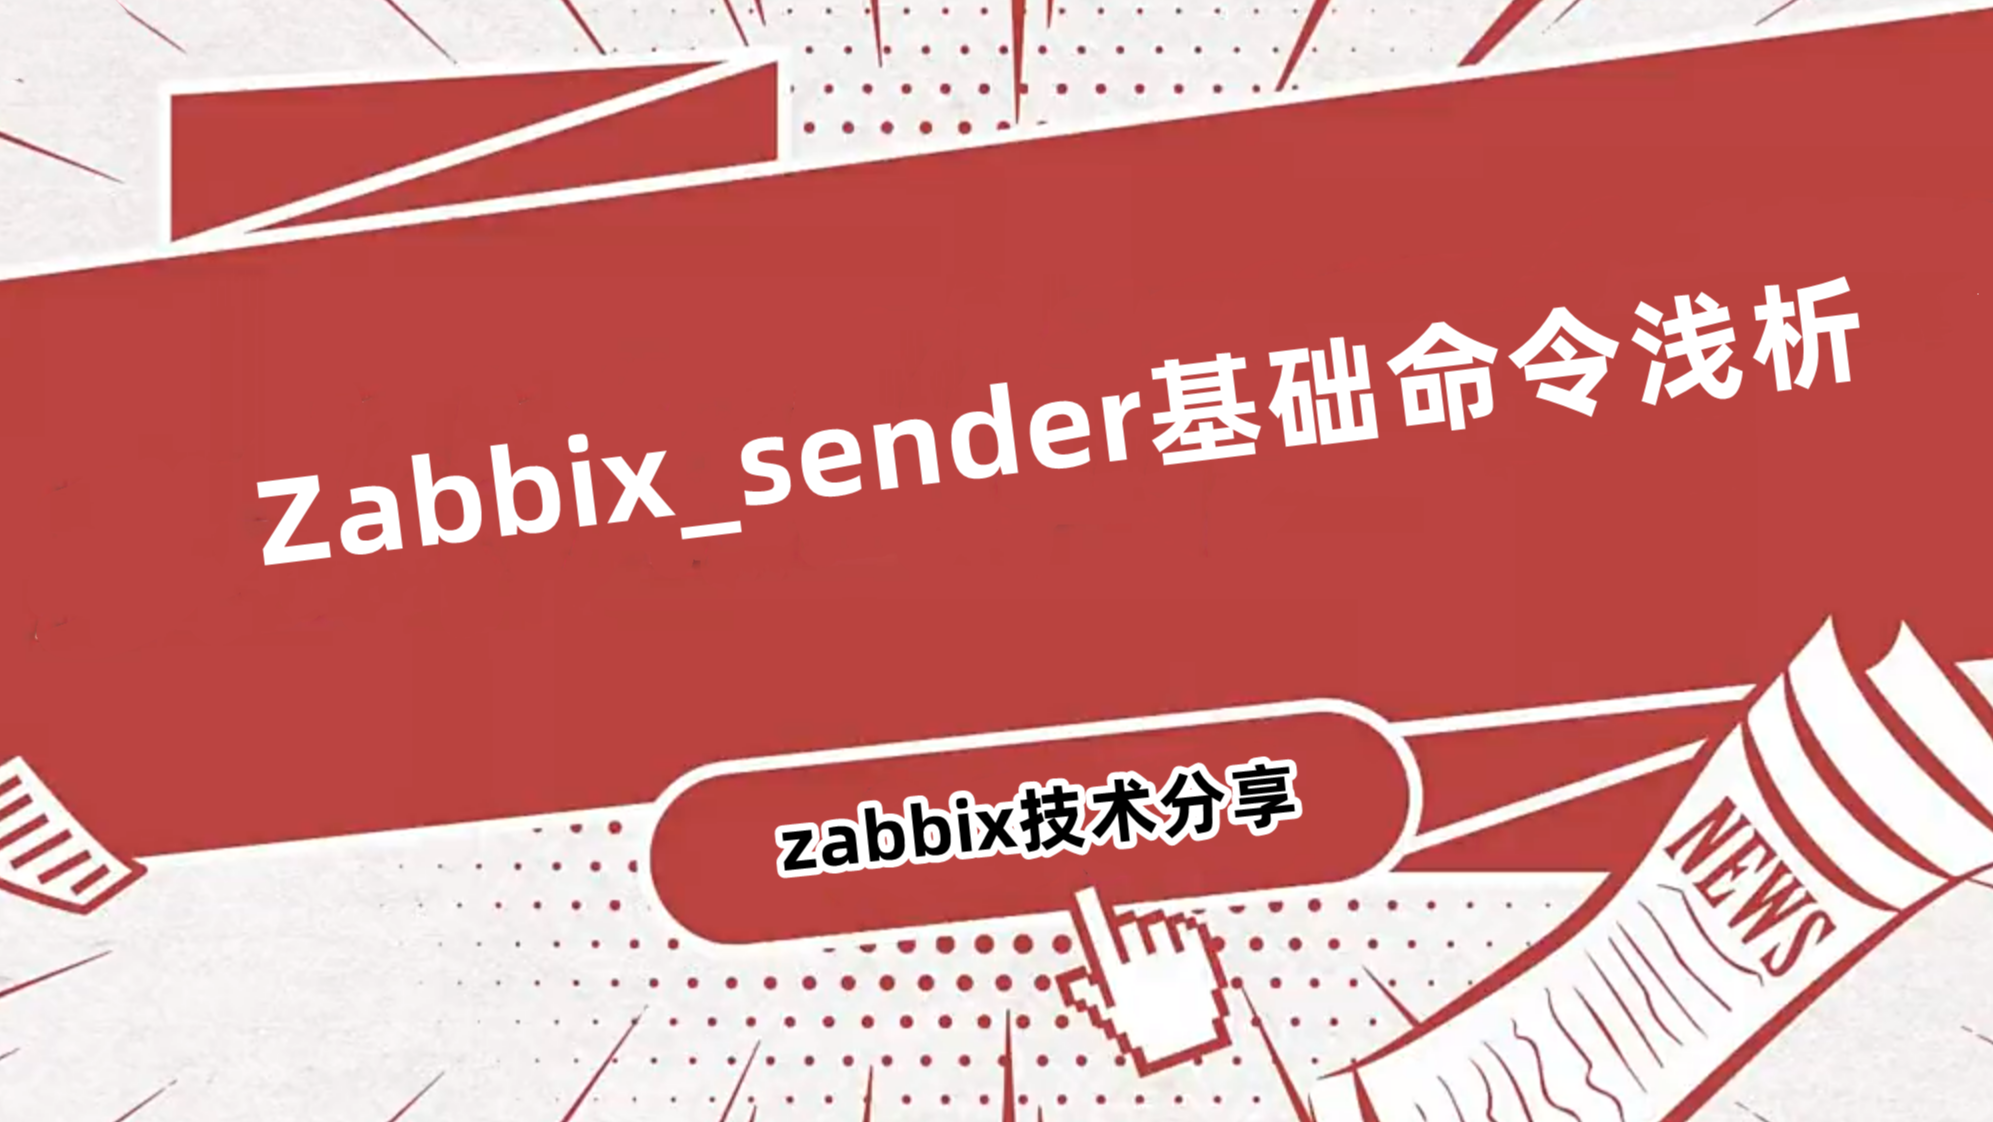 Zabbix_sender基础命令浅析